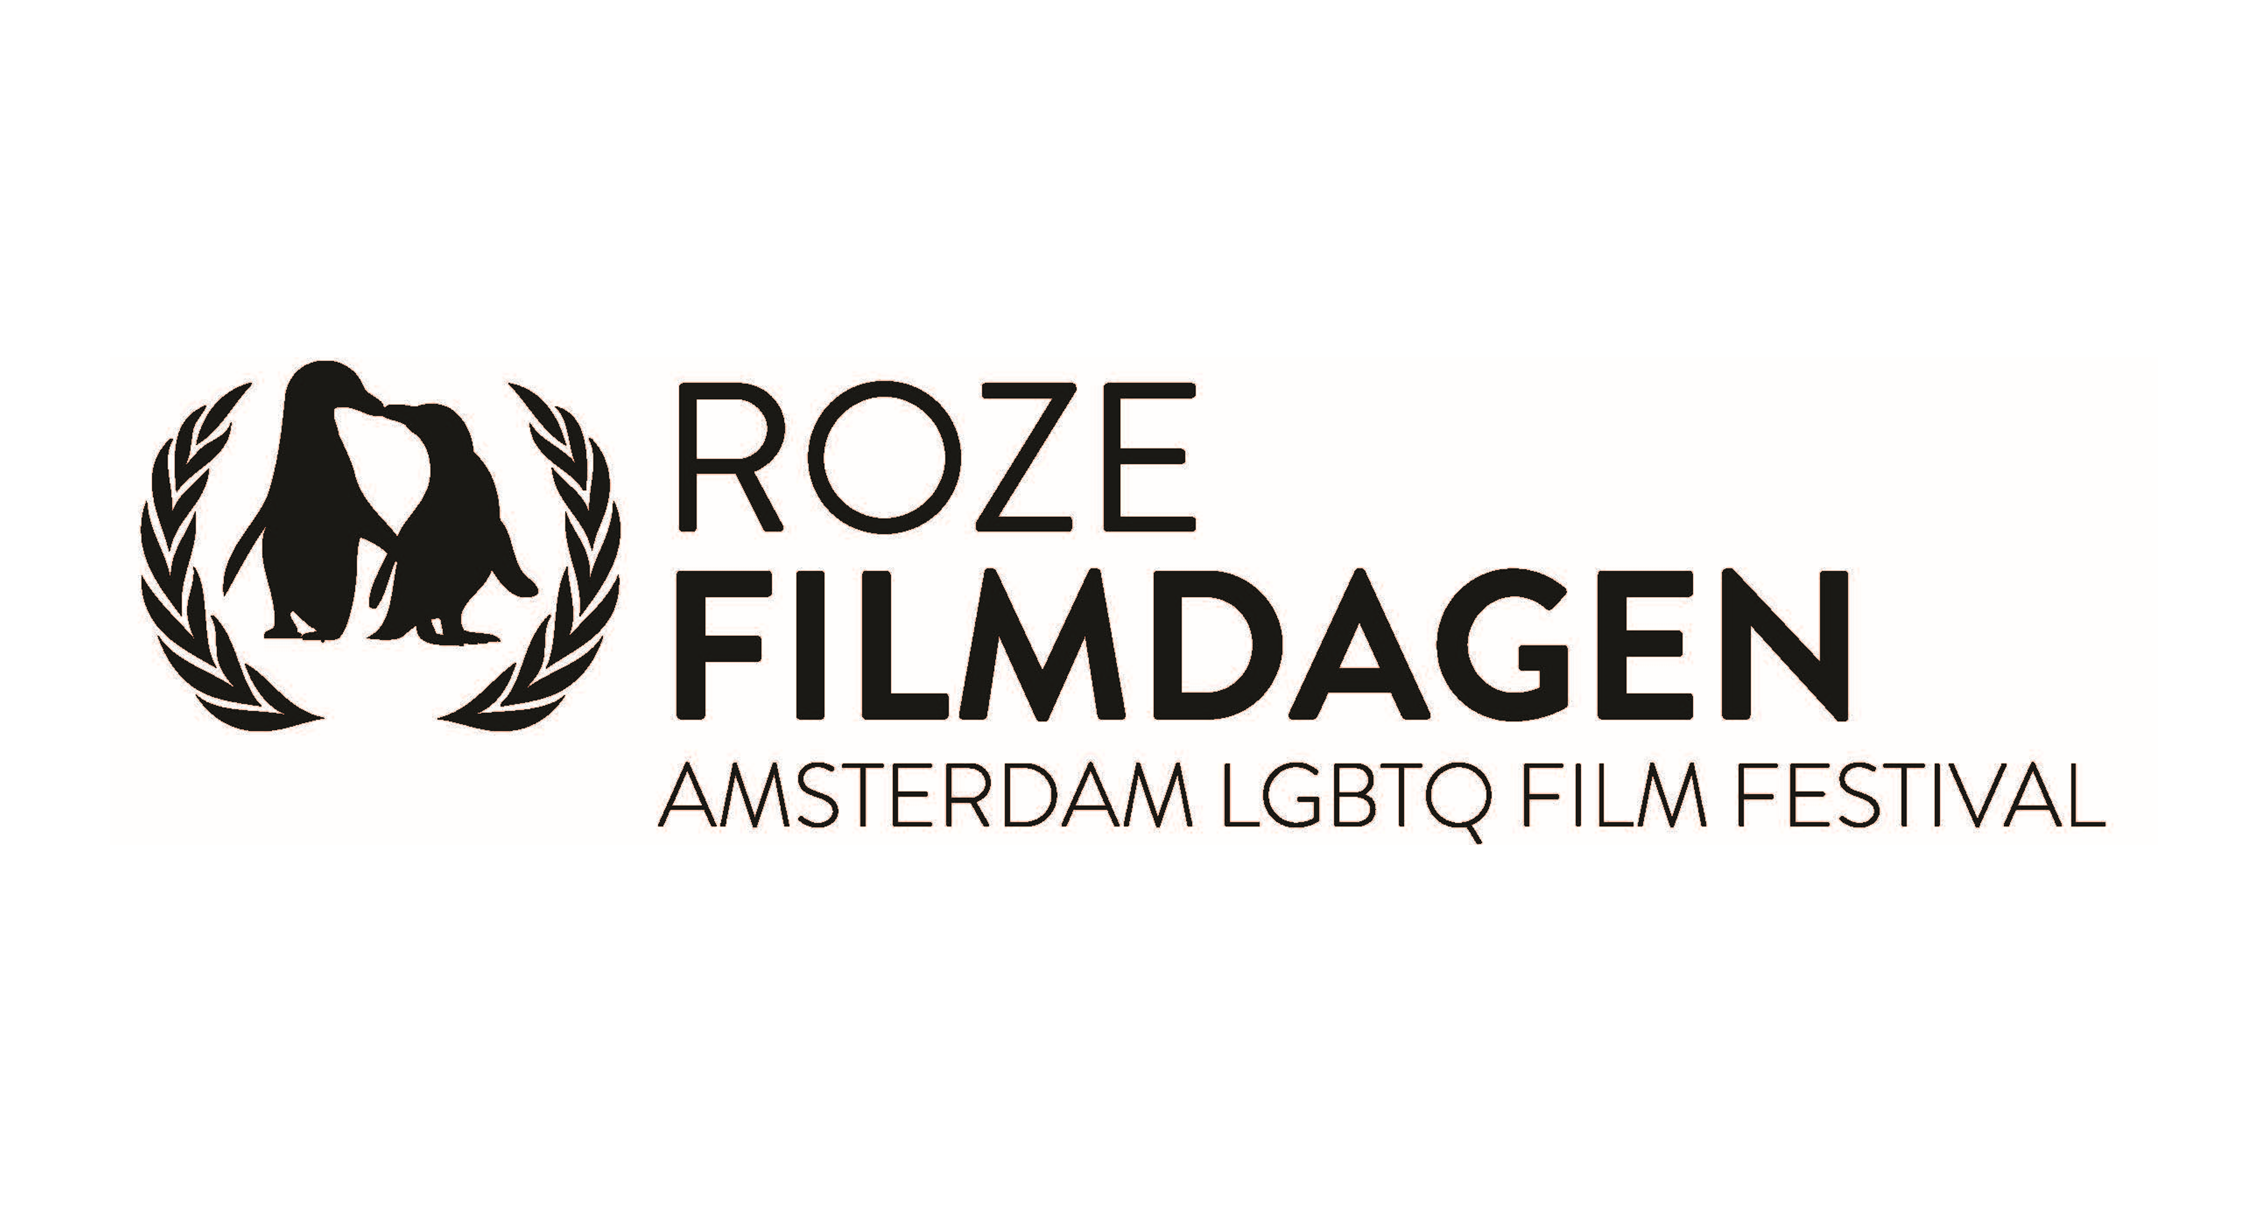 阿姆斯特丹同志影展 Roze Filmdagen